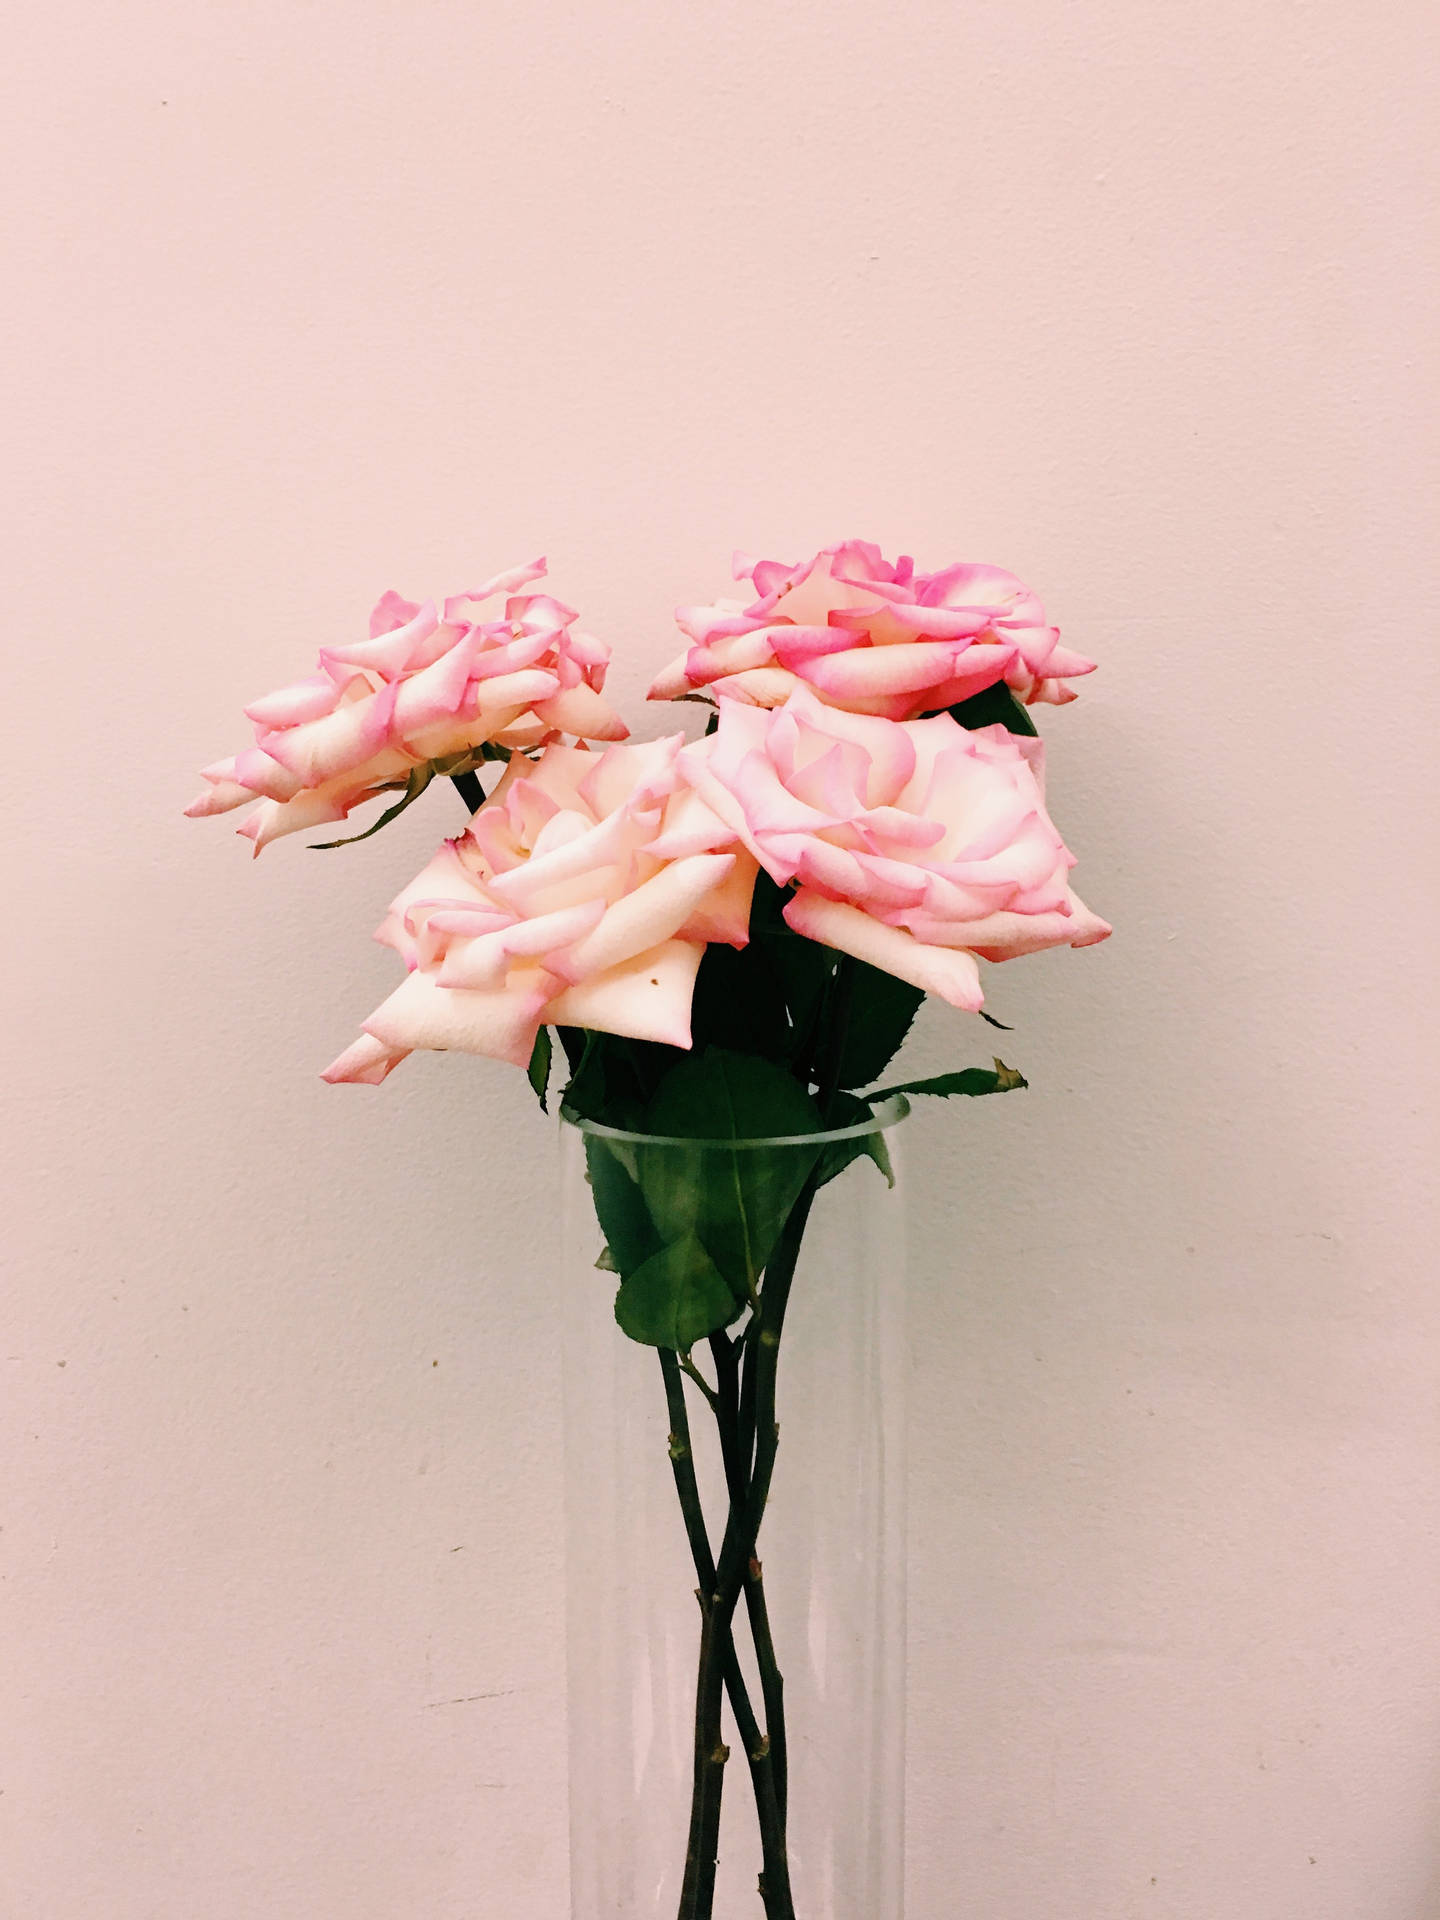 Umbelo Cenário De Flores Rosa E Brancas Em Plena Floração. Papel de Parede